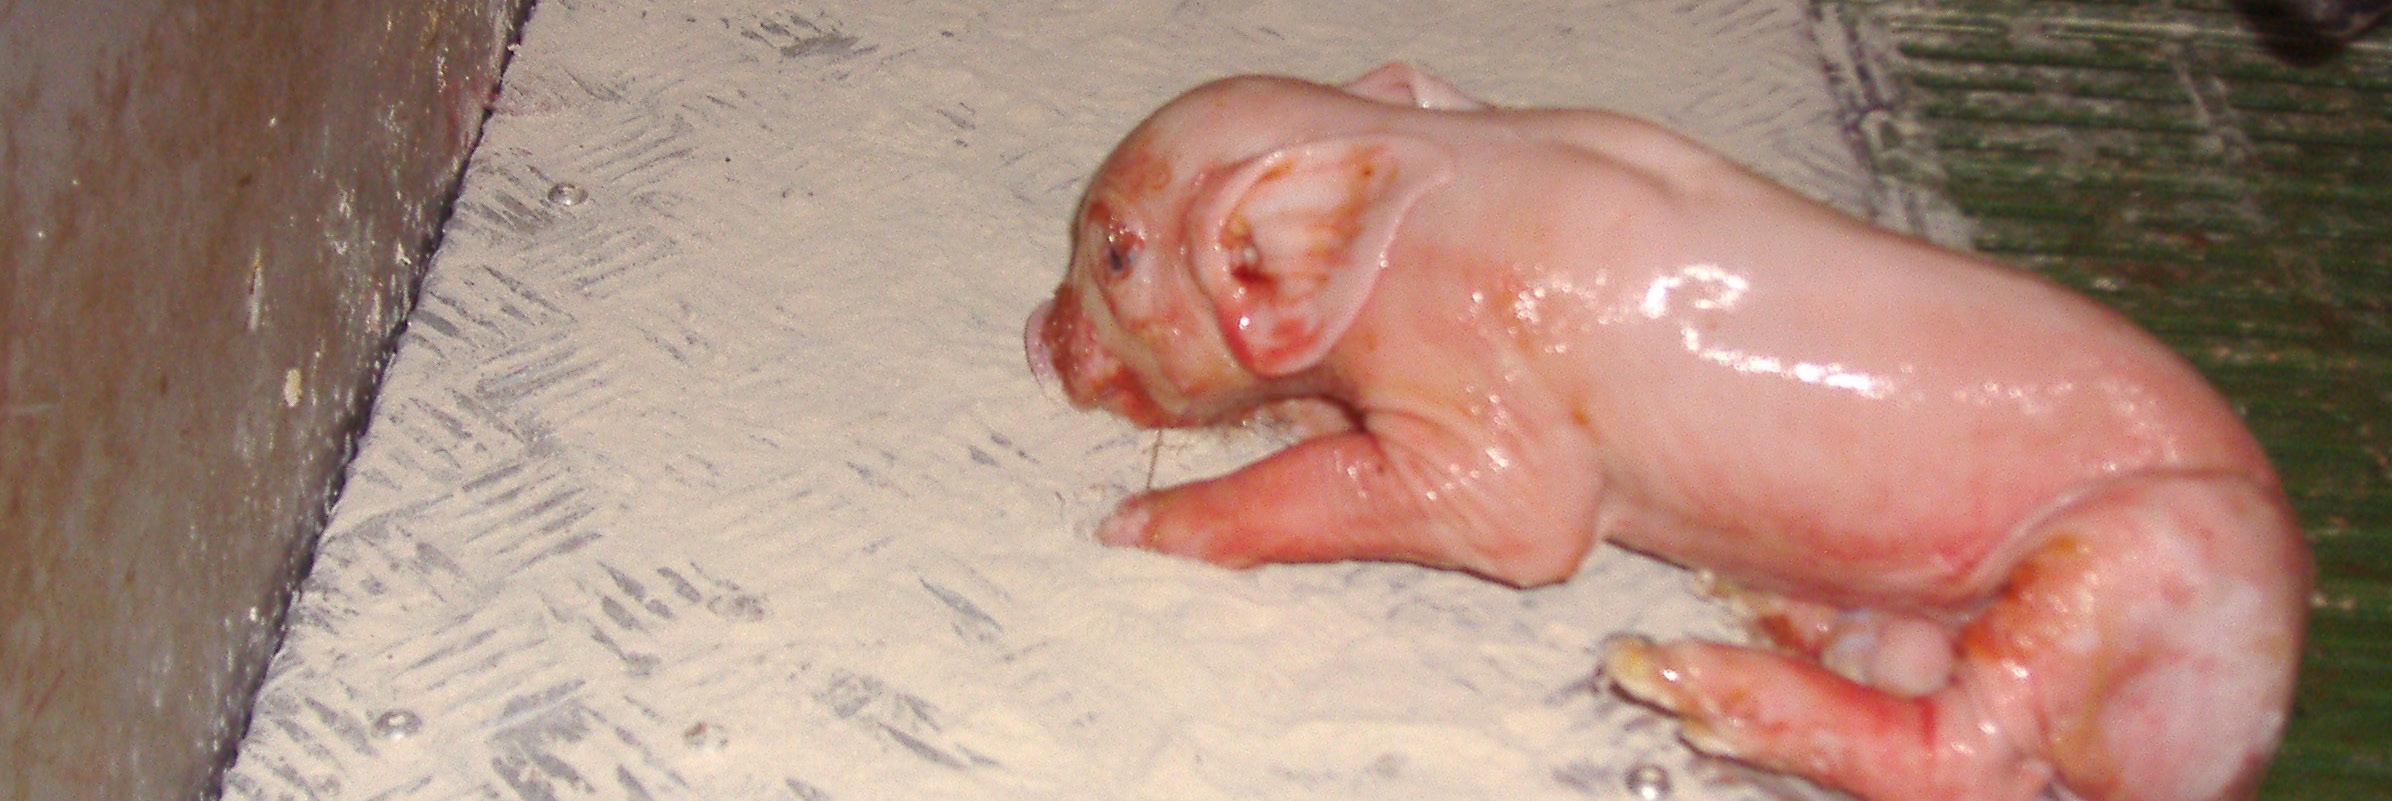 Mortalidad neonatal en lechones